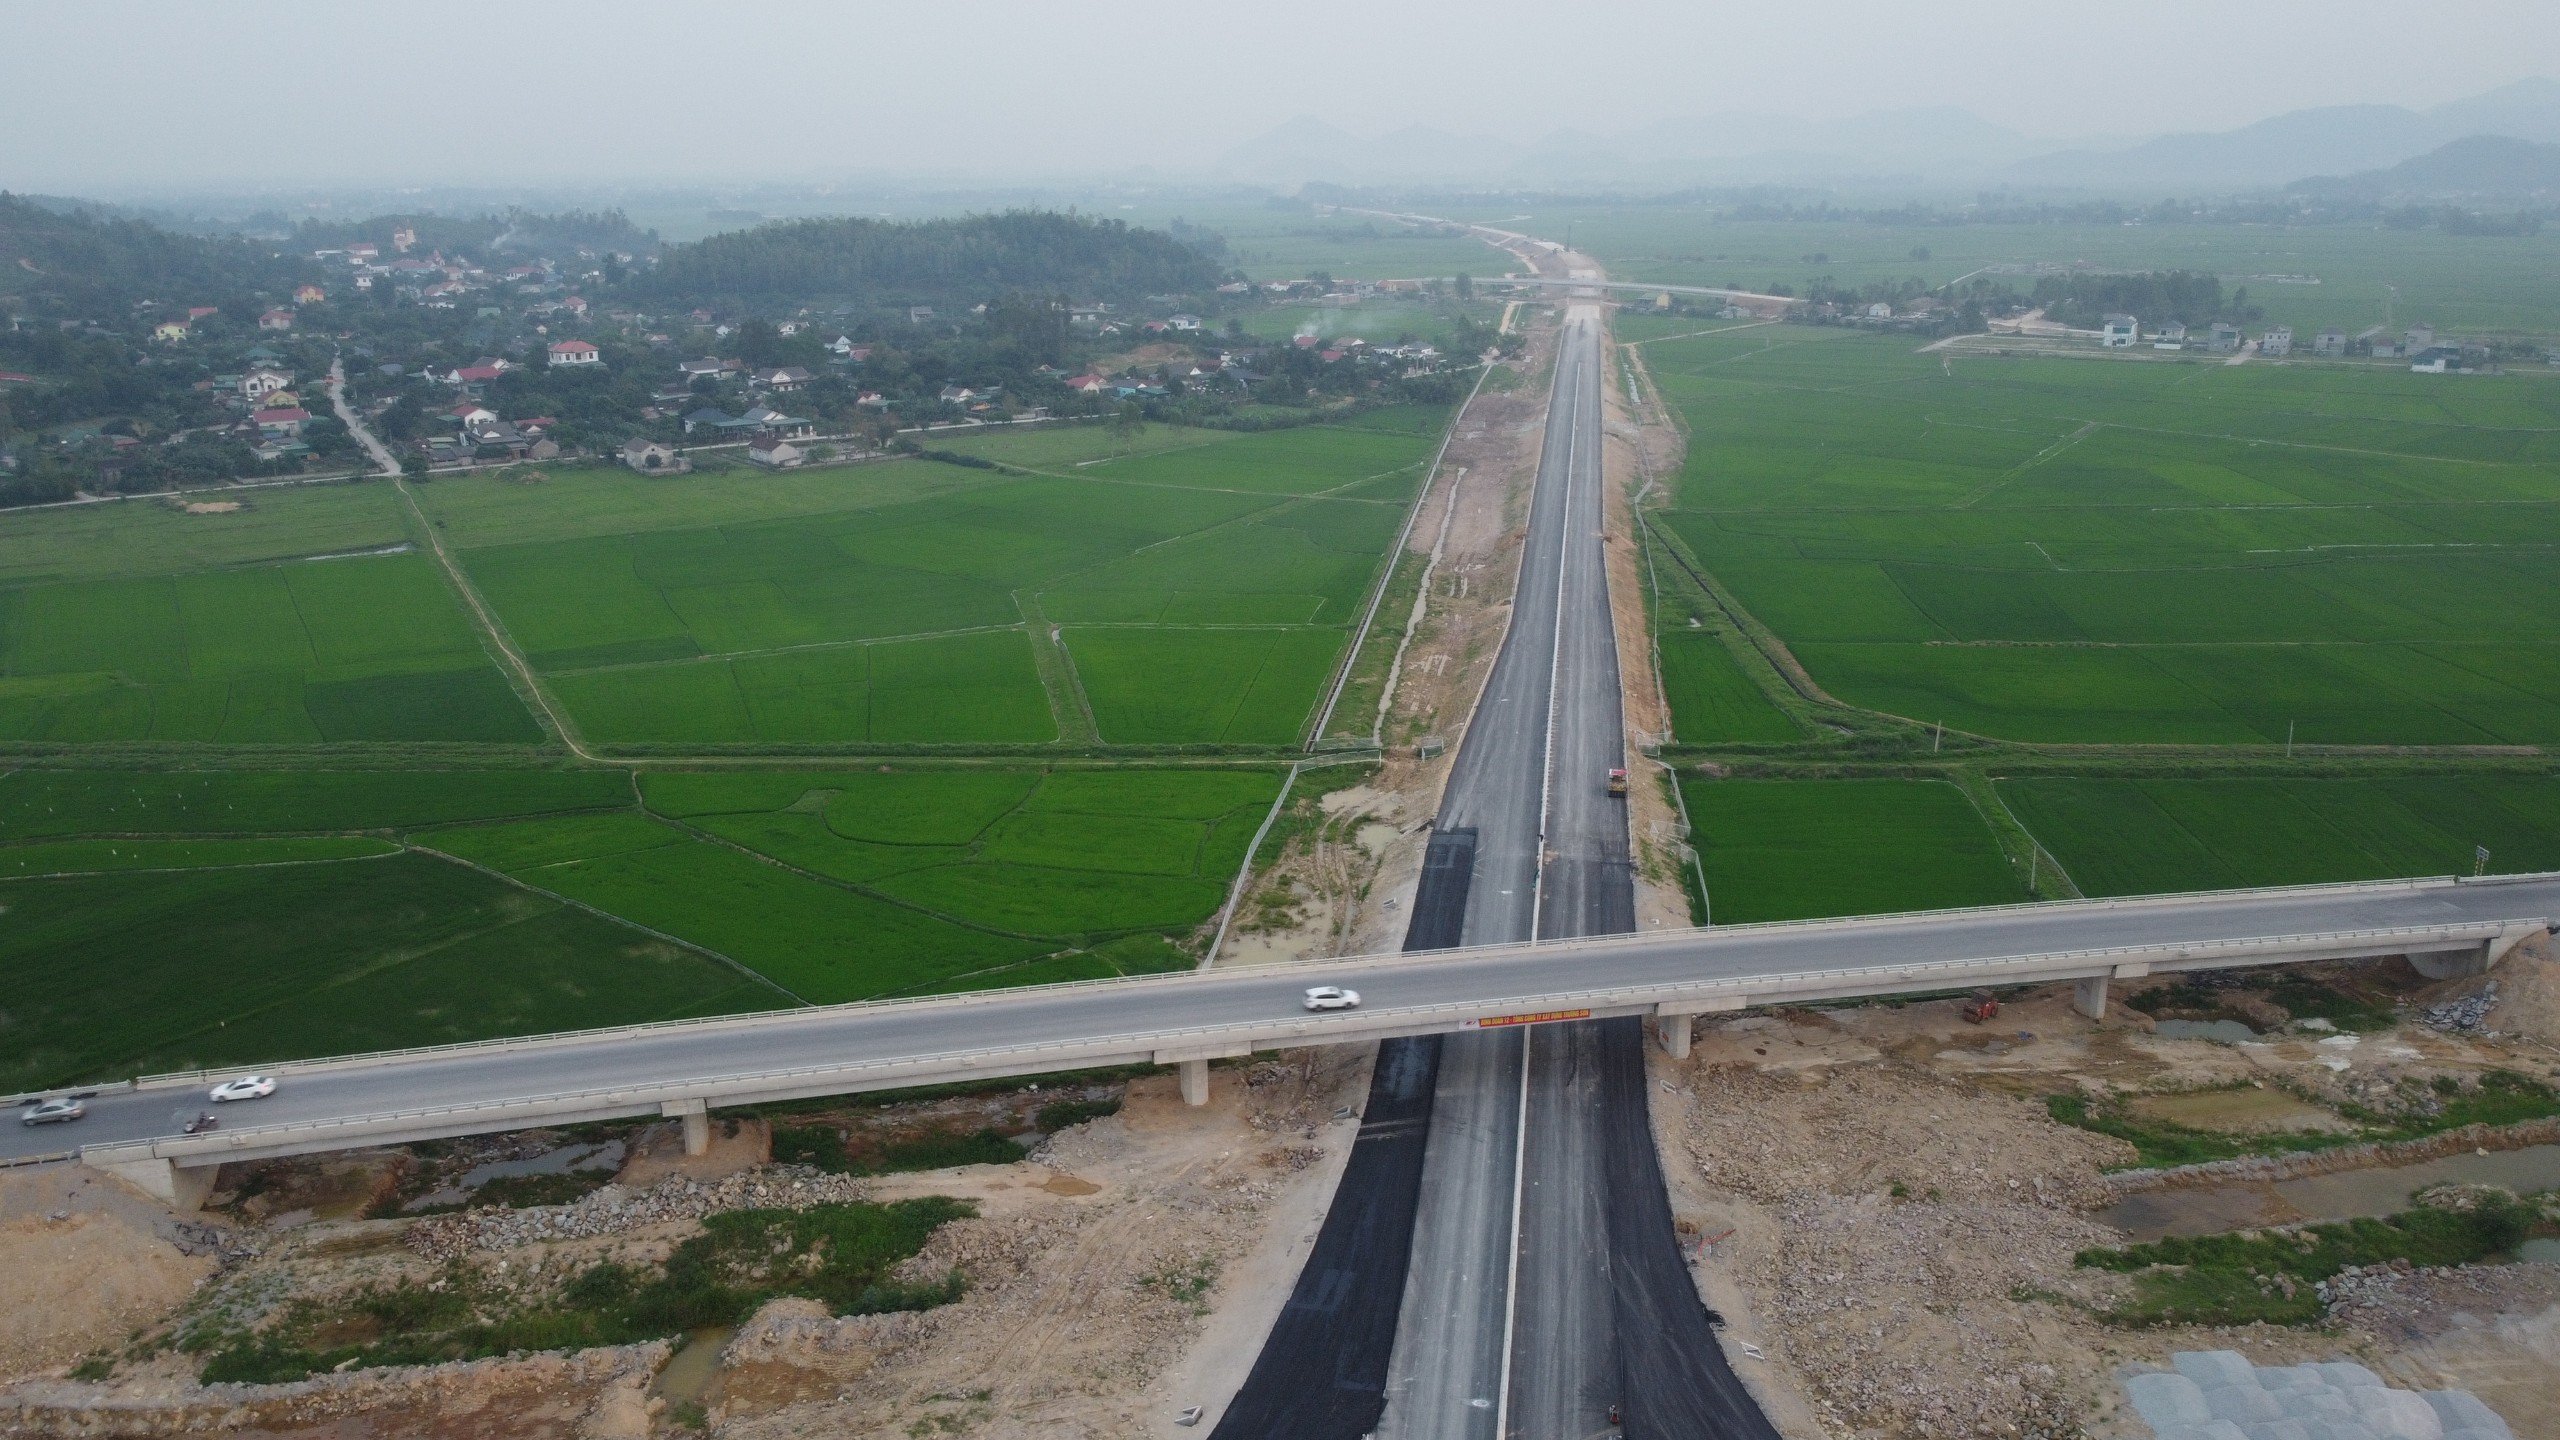 Dự án cao tốc Bắc - Nam phía đông (giai đoạn 2017 - 2020) đoạn Diễn Châu - Bãi Vọt có tổng chiều dài hơn 49 km qua địa bàn 2 tỉnh Nghệ An (44,4 km) và Hà Tĩnh (4,84 km) được thực hiện theo hình thức đối tác công tư (PPP) với tổng mức đầu tư 11.157 tỉ đồng